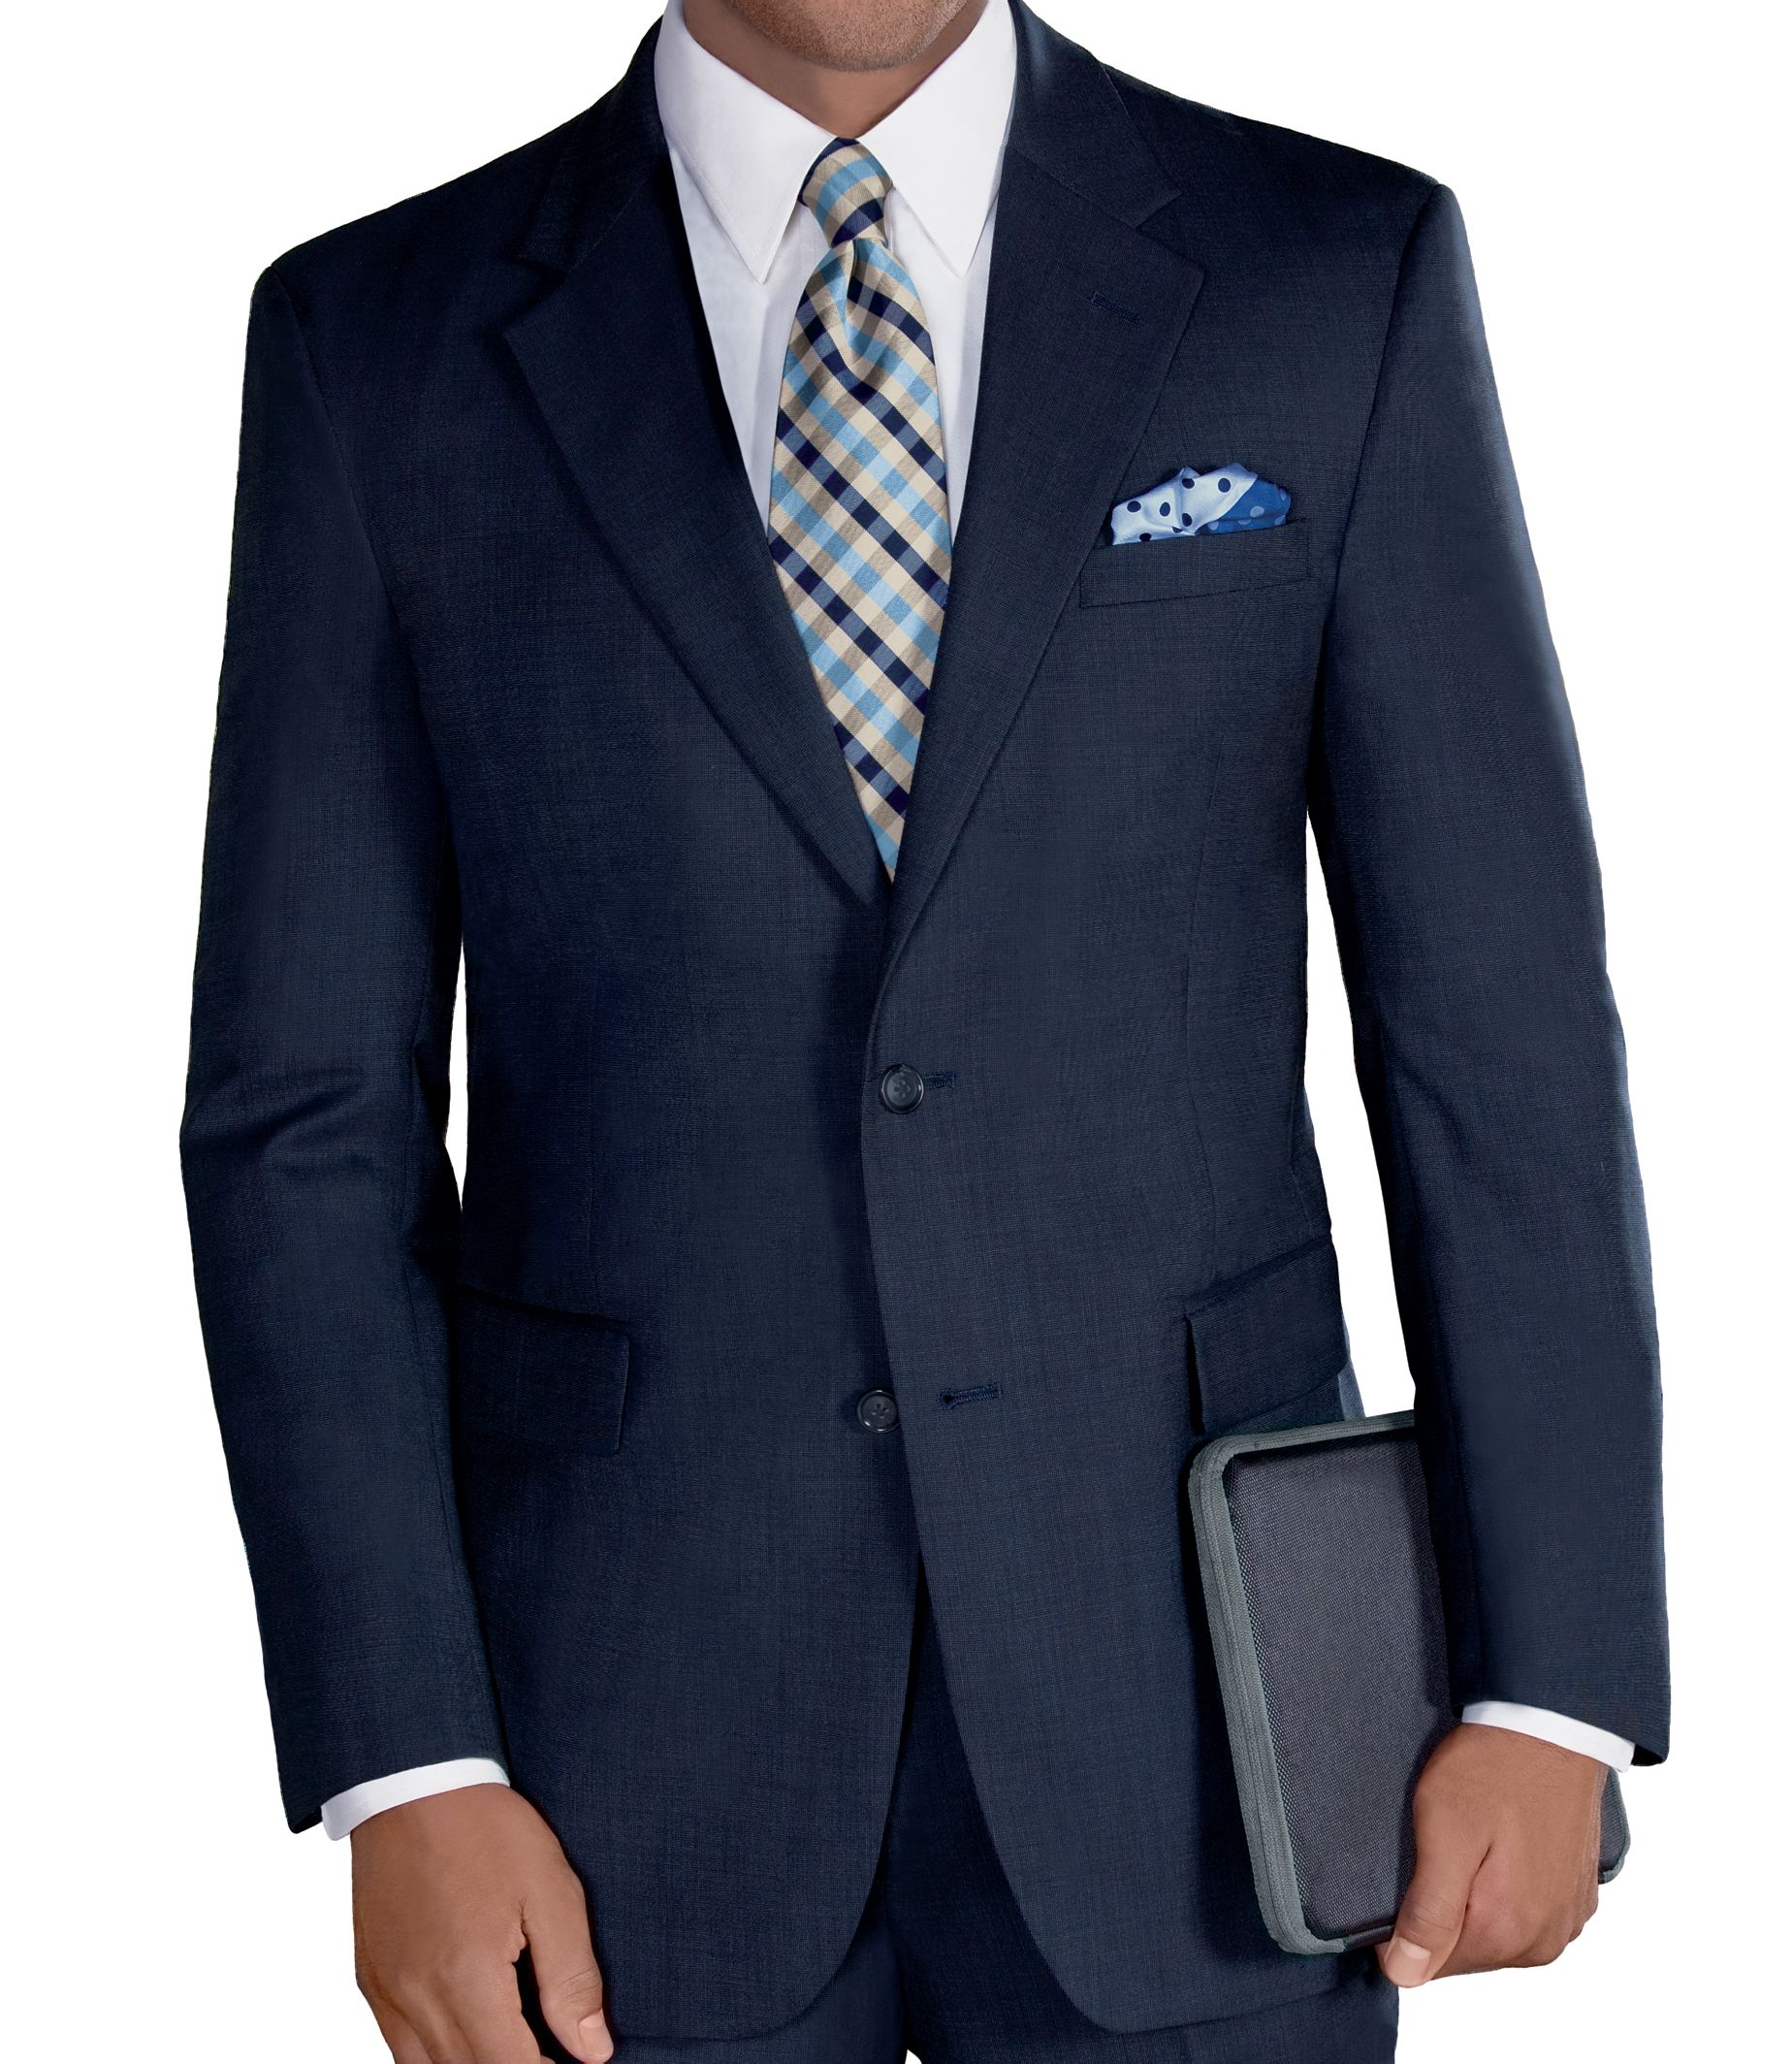 Executive Suits | Men's Suits | JoS. A. Bank Clothiers